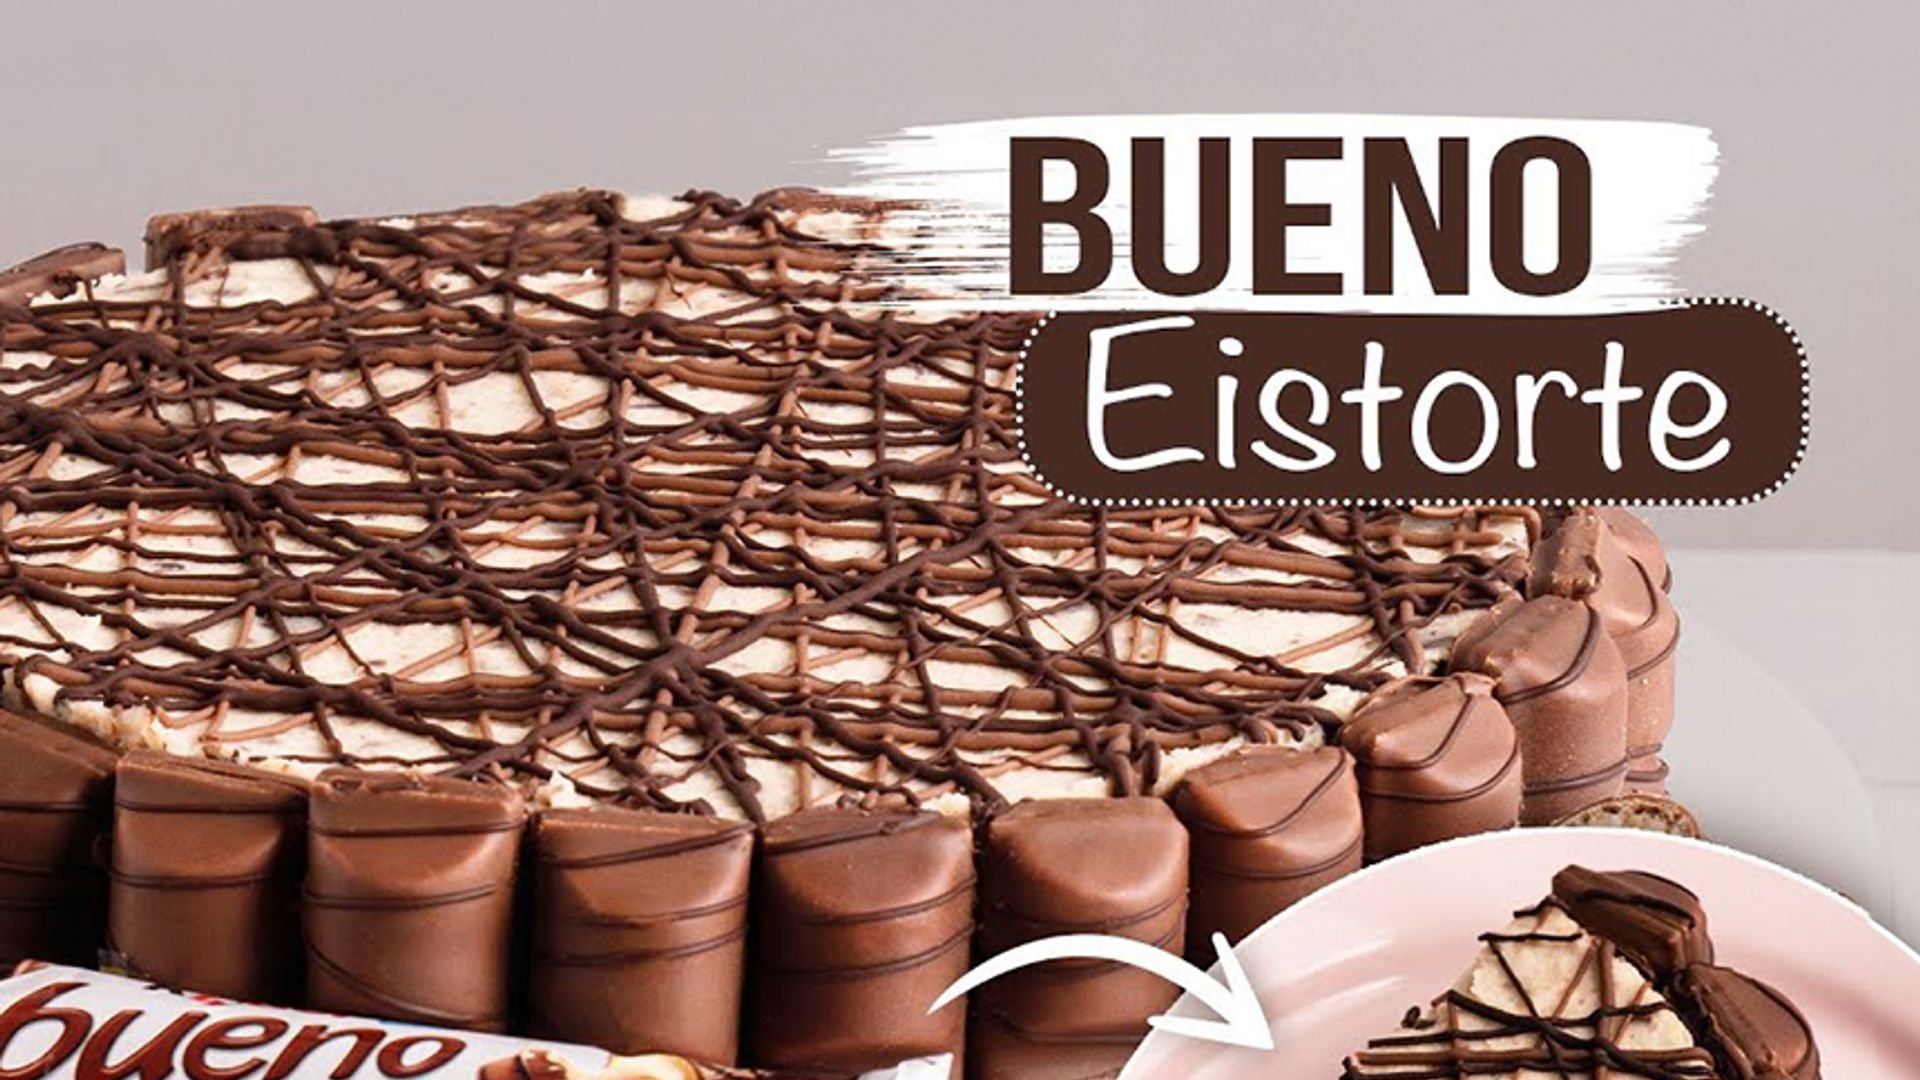 Bueno Torte / ohne Backen / Eistorte / Ice Cream Cake  / Sallys Welt